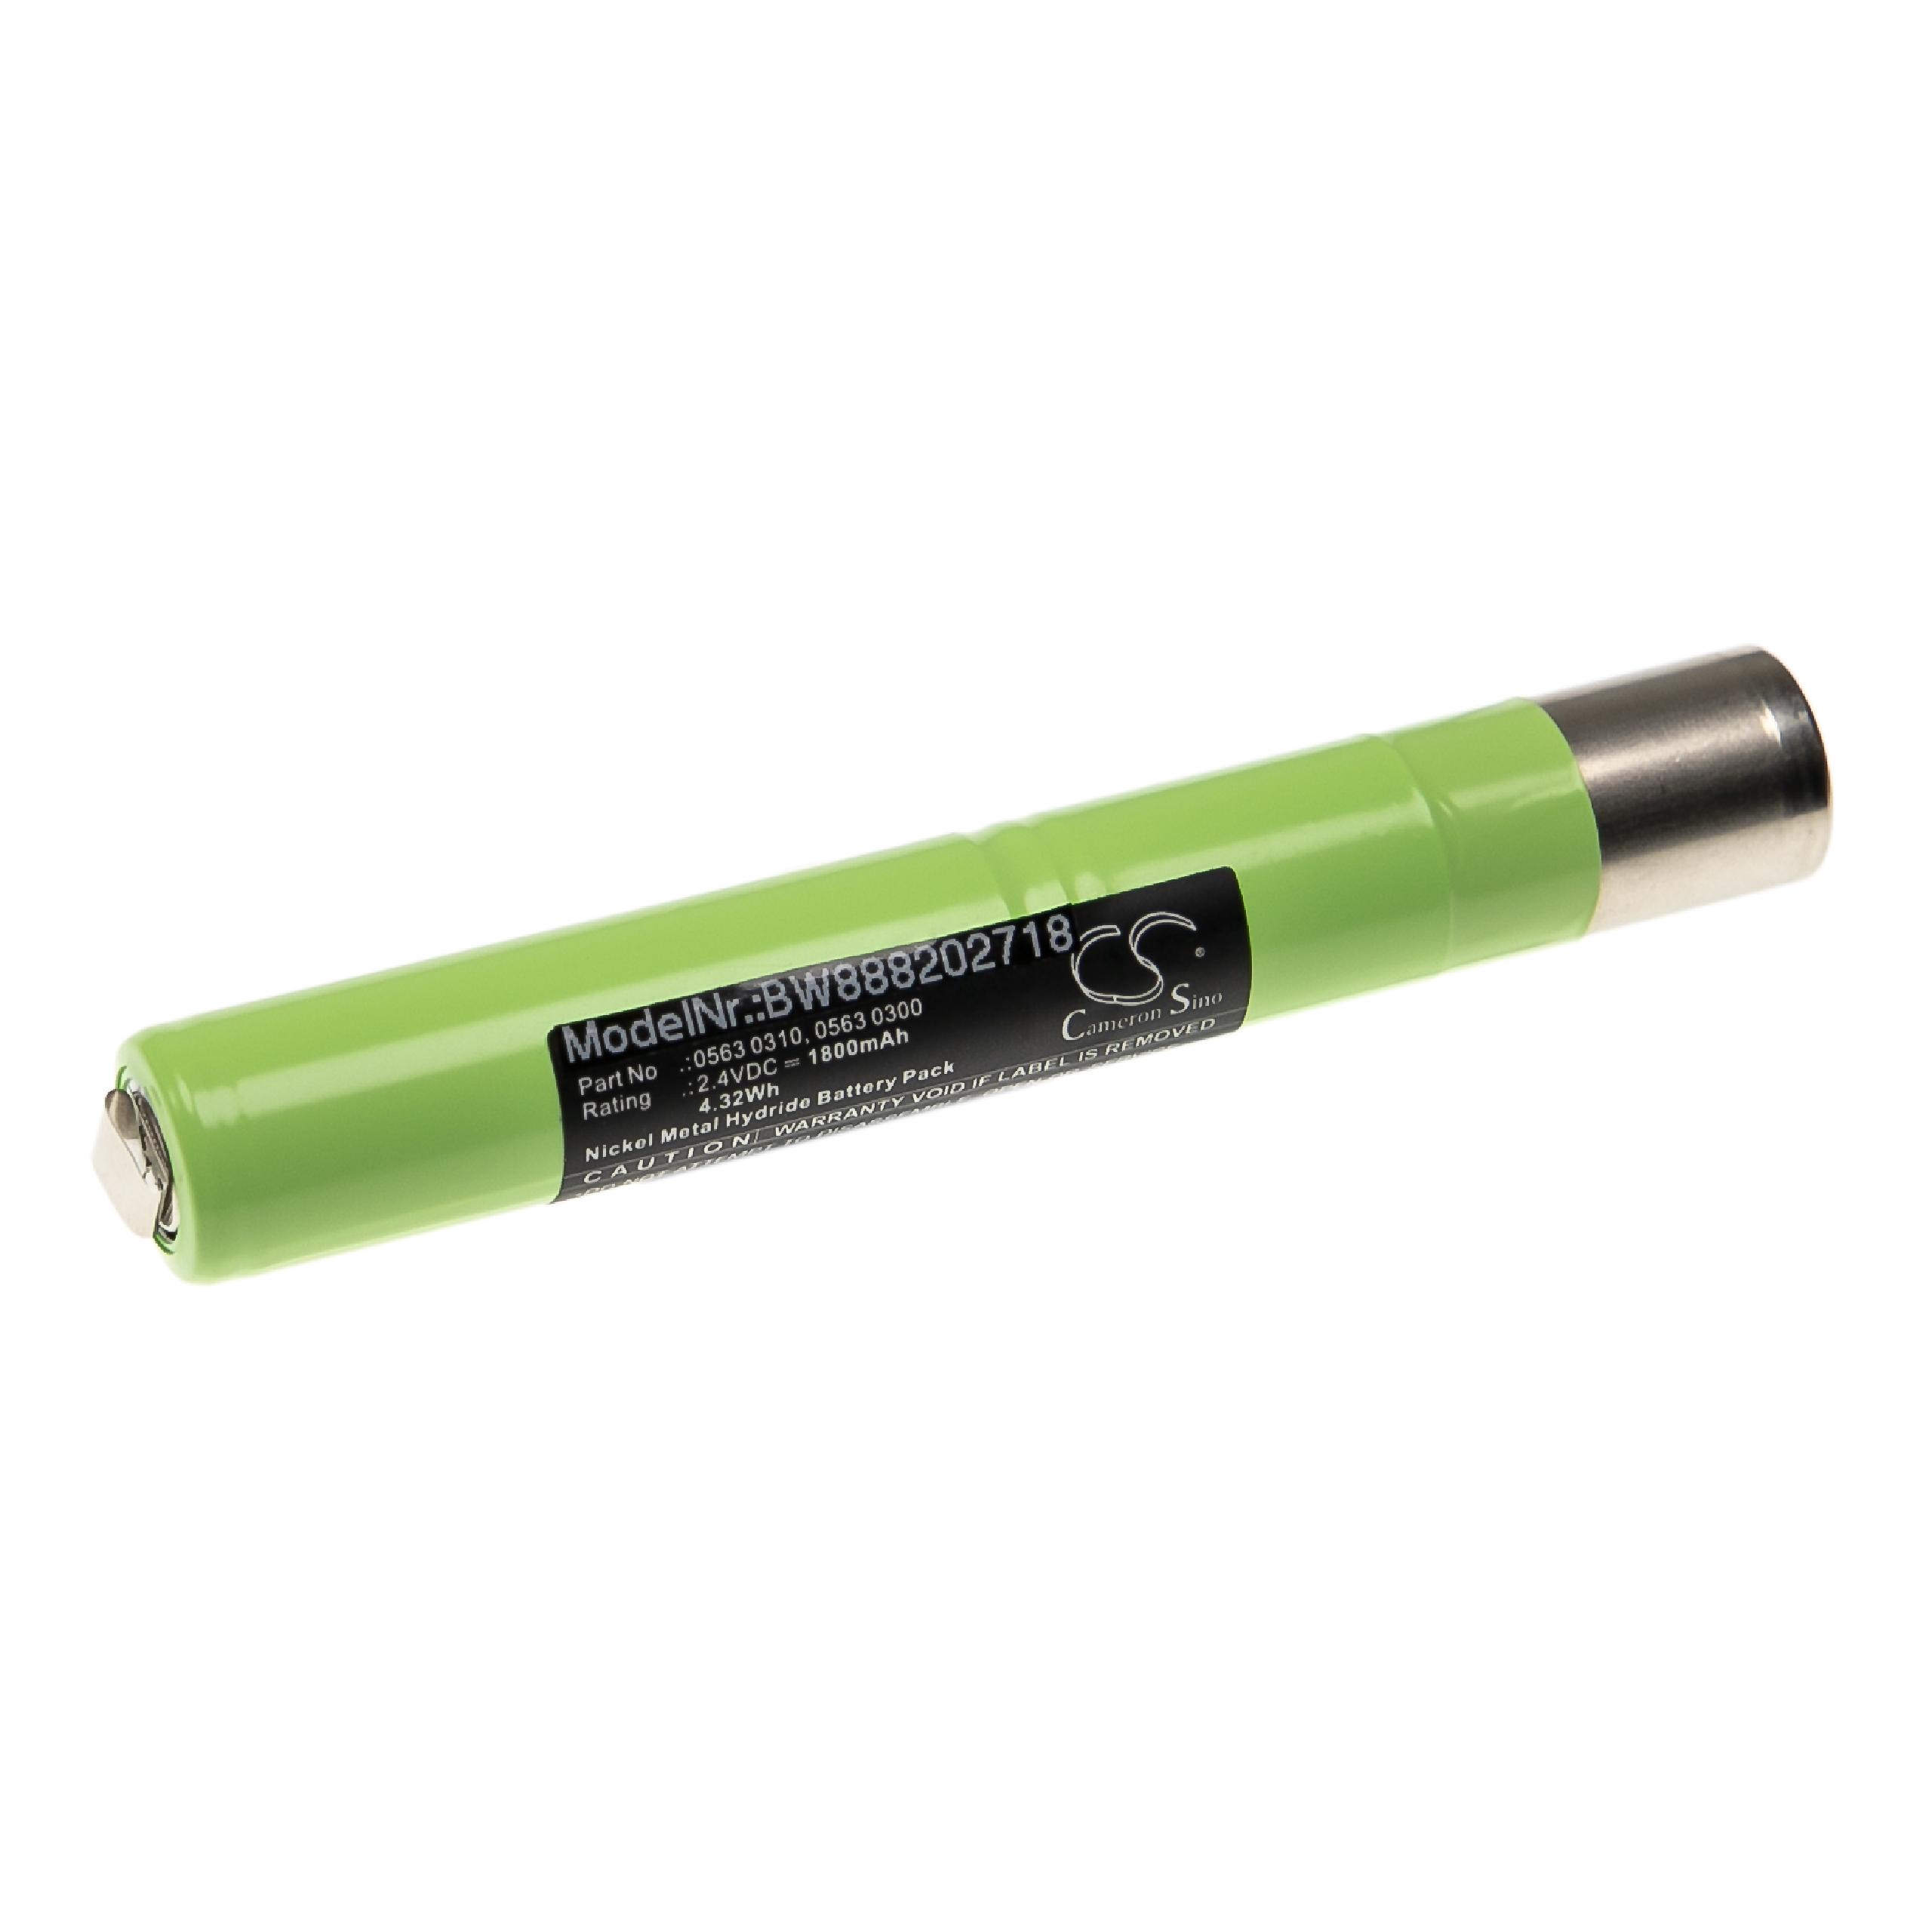 Batterie remplace Testo 0563 0310, 0563 0345, 0563 0300 pour outil de mesure - 1800mAh 2,4V NiMH